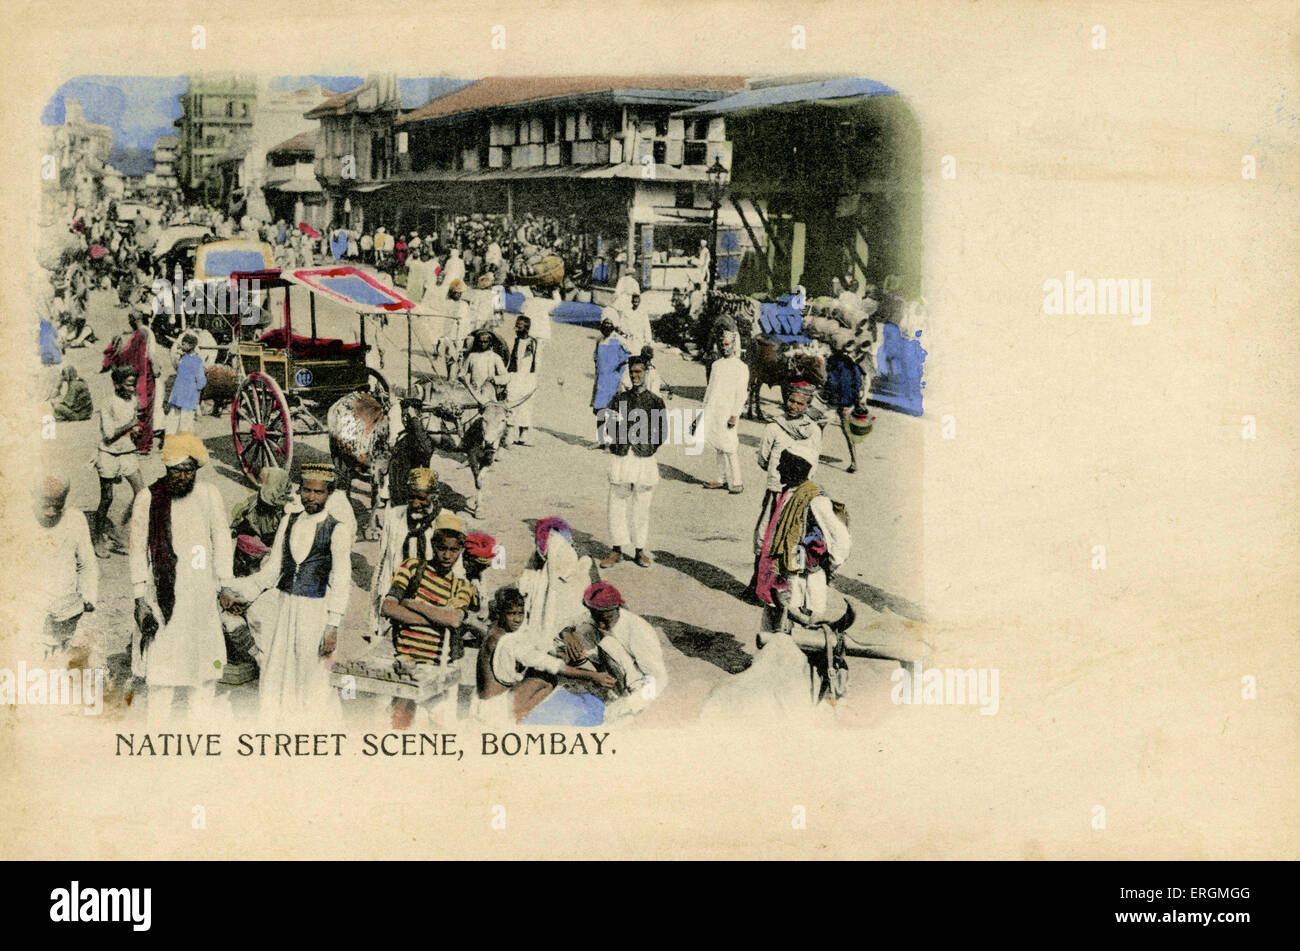 Straßenszene, Mumbai, Indien. Farbausführung Foto aus dem frühen 20. Jahrhundert. Straßenverkäufer und Kuh gezogenen Karren sind sichtbar. Stockfoto